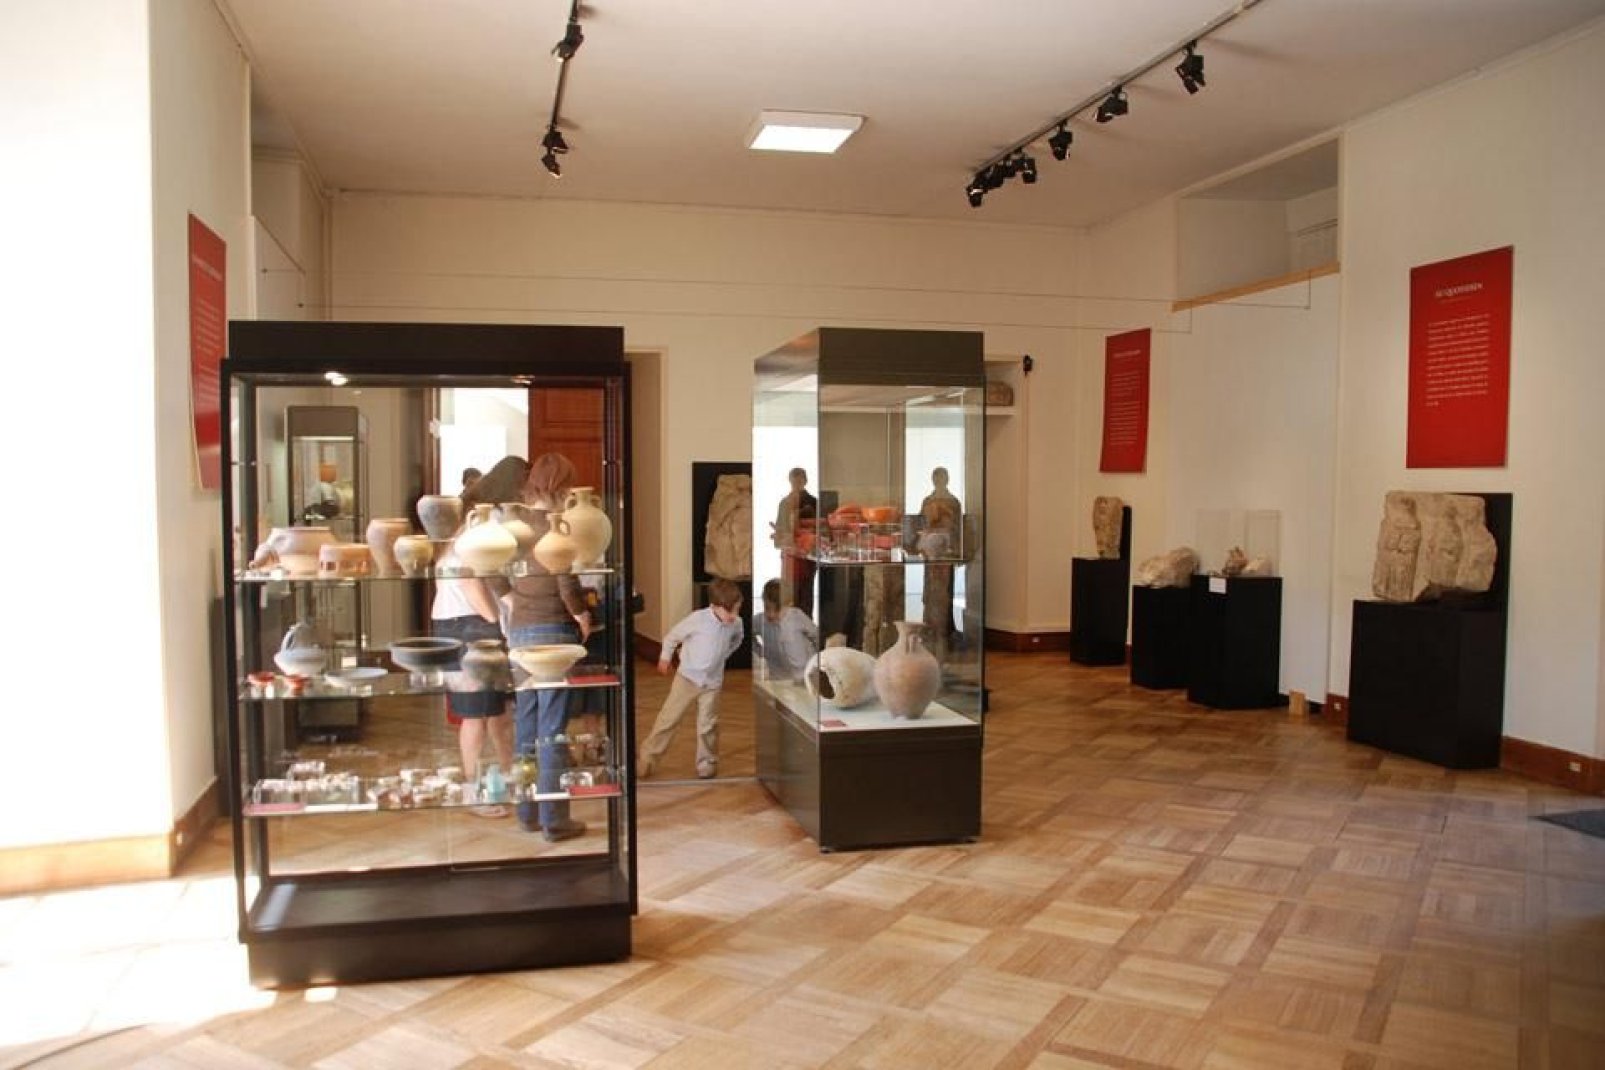 Questo museo si compone di arte, storia e tradizioni locali.